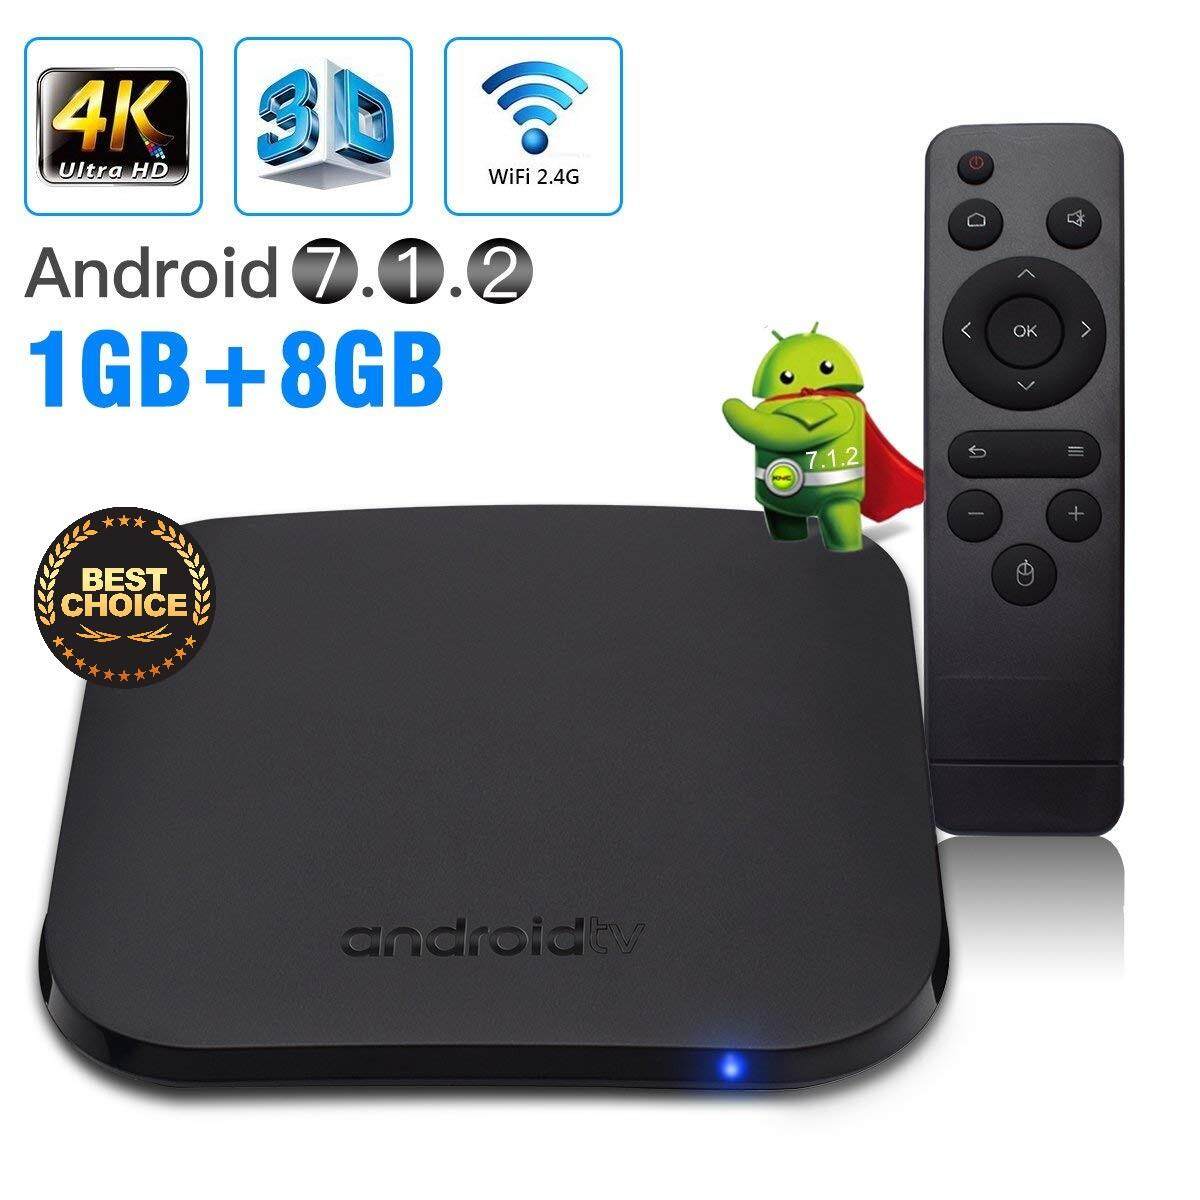 สอนใช้งาน  อุดรธานี กล่องดิจิตอลทีวีแอนดรอยด์ M8S PLUS W Quad-Core Nougat TV Box (Amlogic S912 CPU  RAM1GB/ROM8GB  Android 7.1)